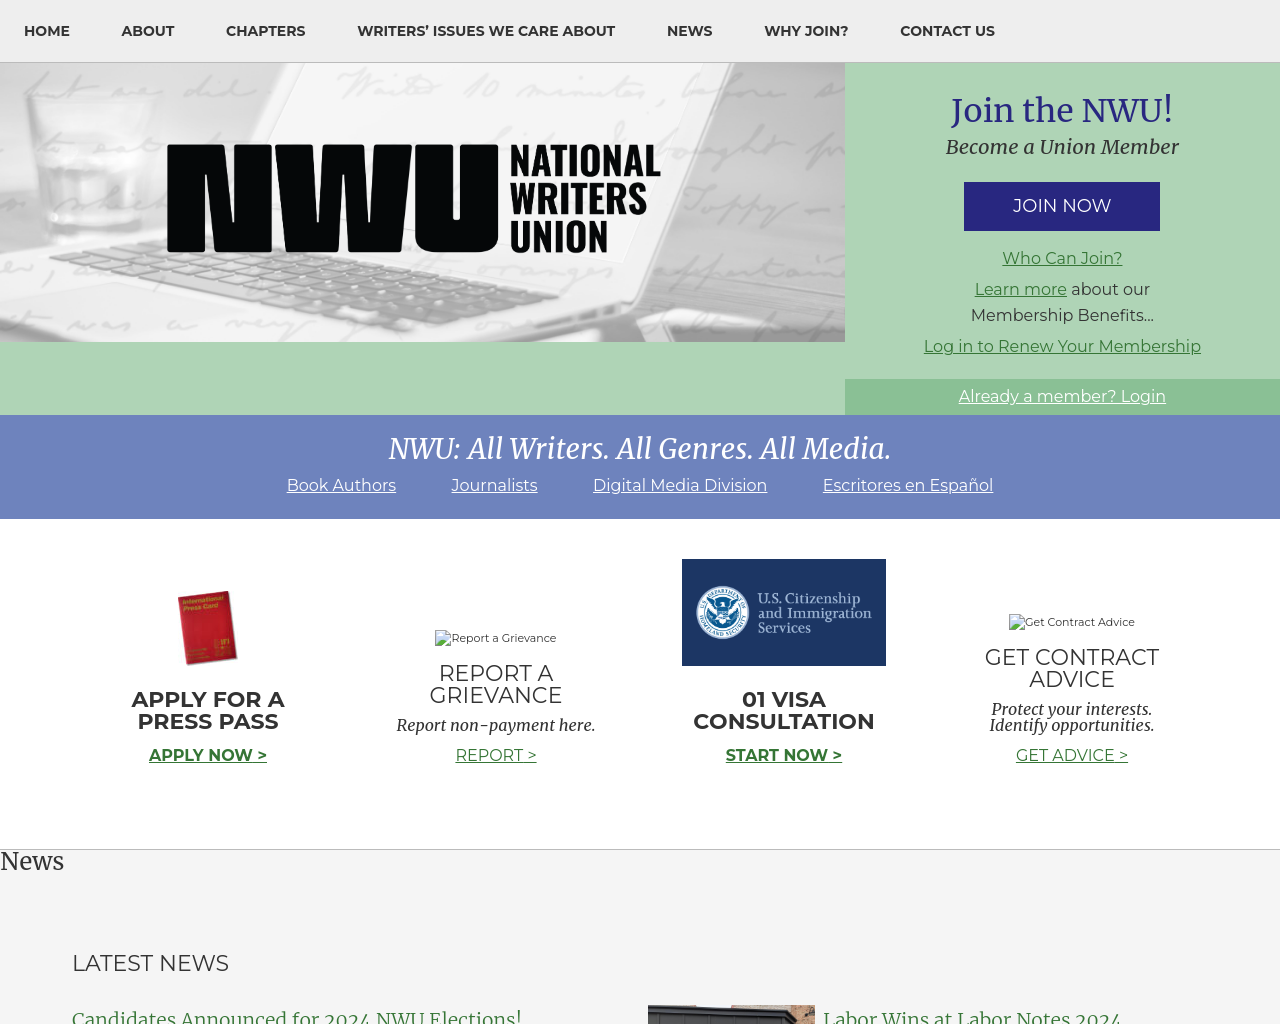 nwu.org